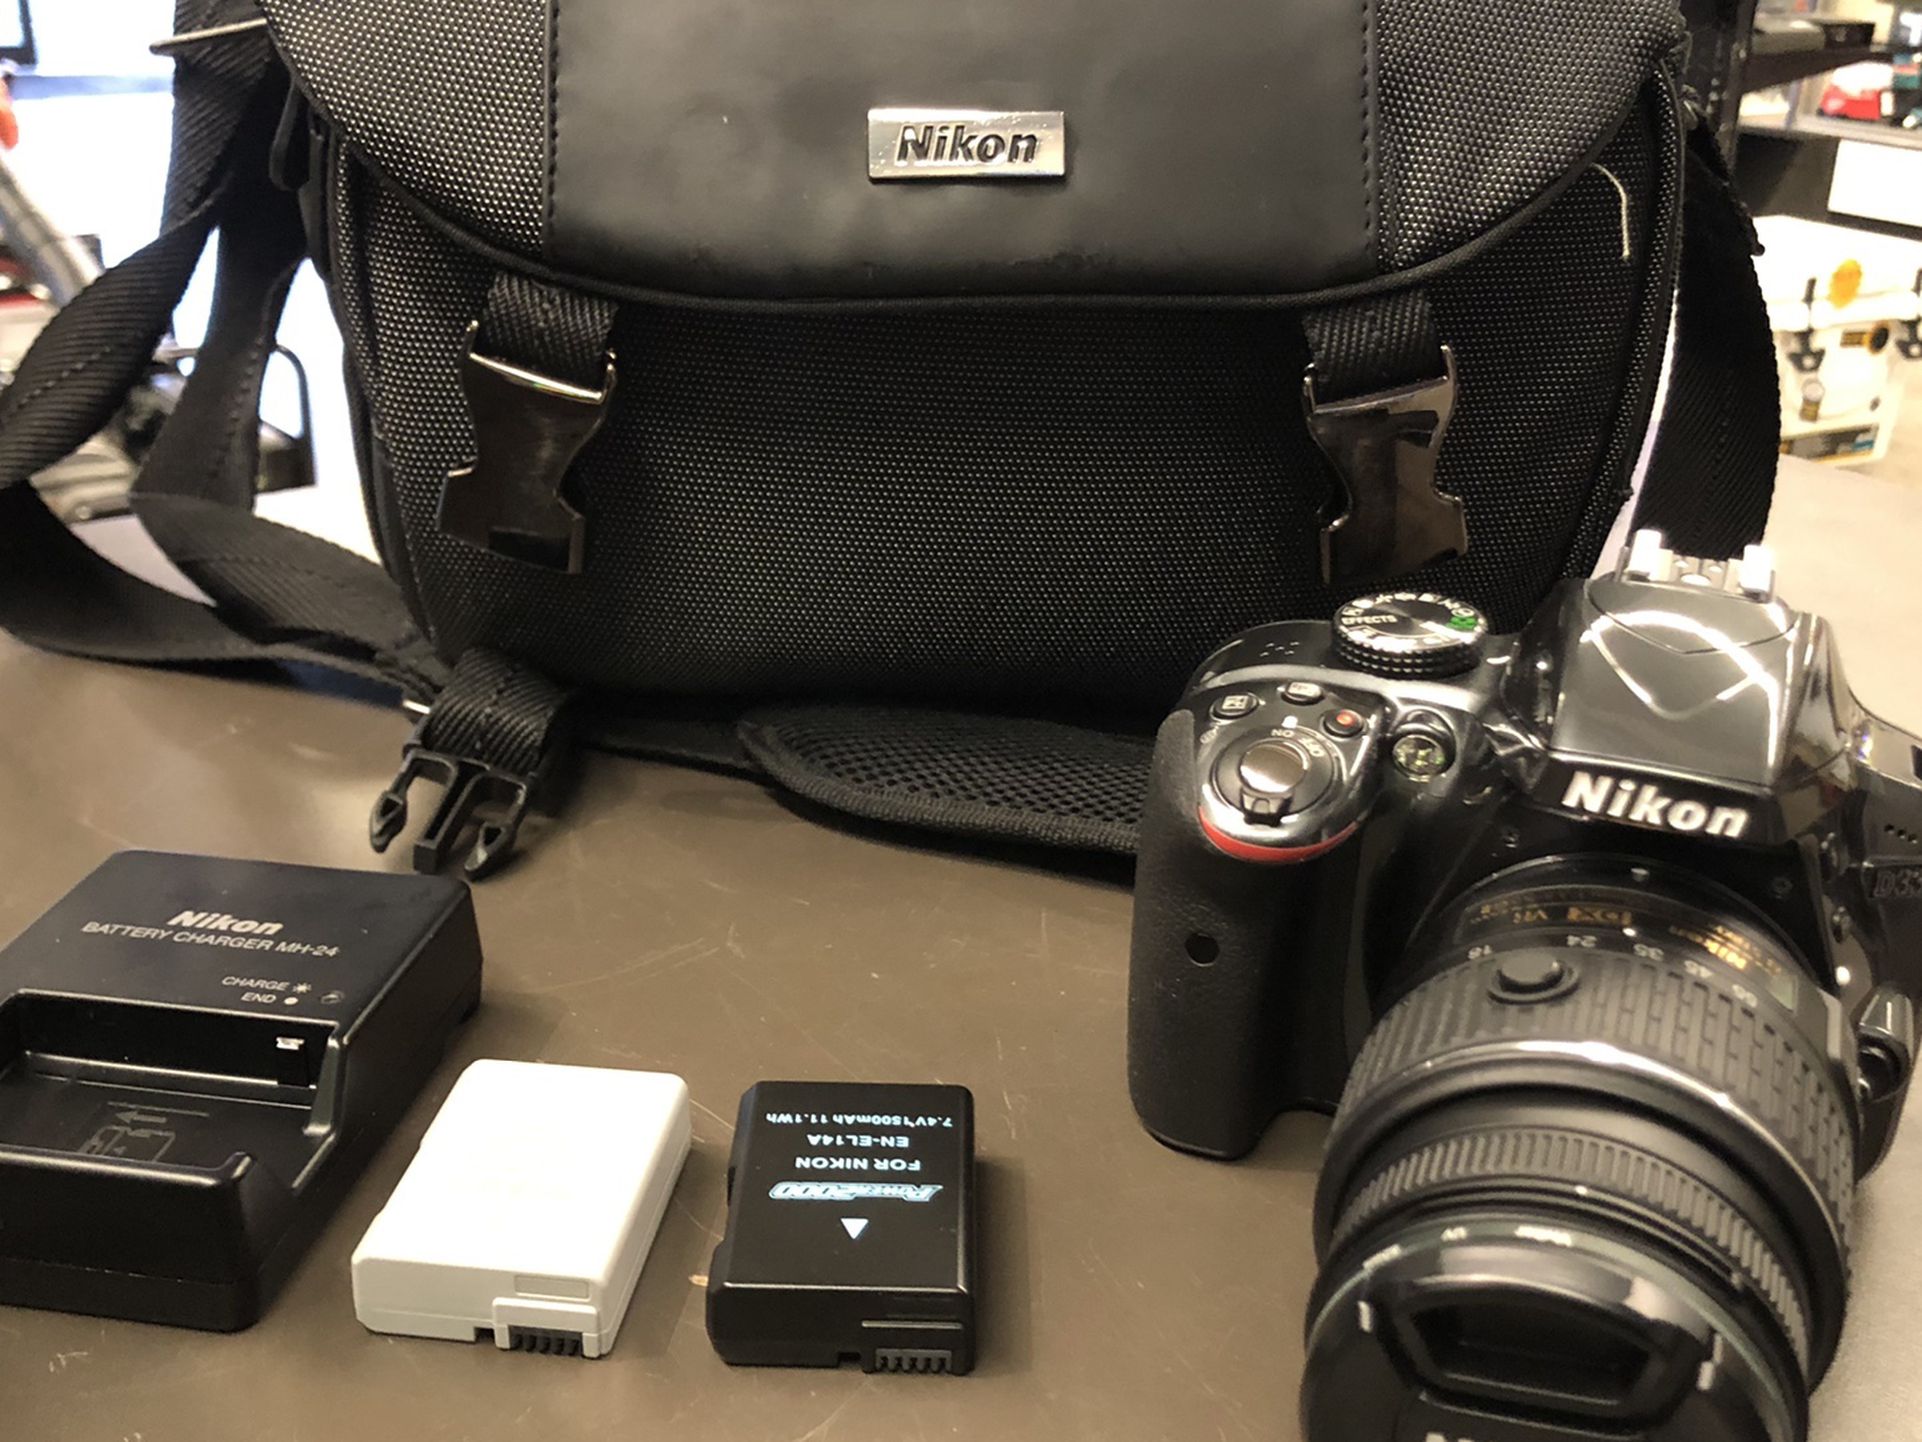 Nikon D3300 SLR canera 24.2 MP W 18-55 Lens 2 Batt Charger Bag And Sd Card No Trades Pick Up In Tacoma